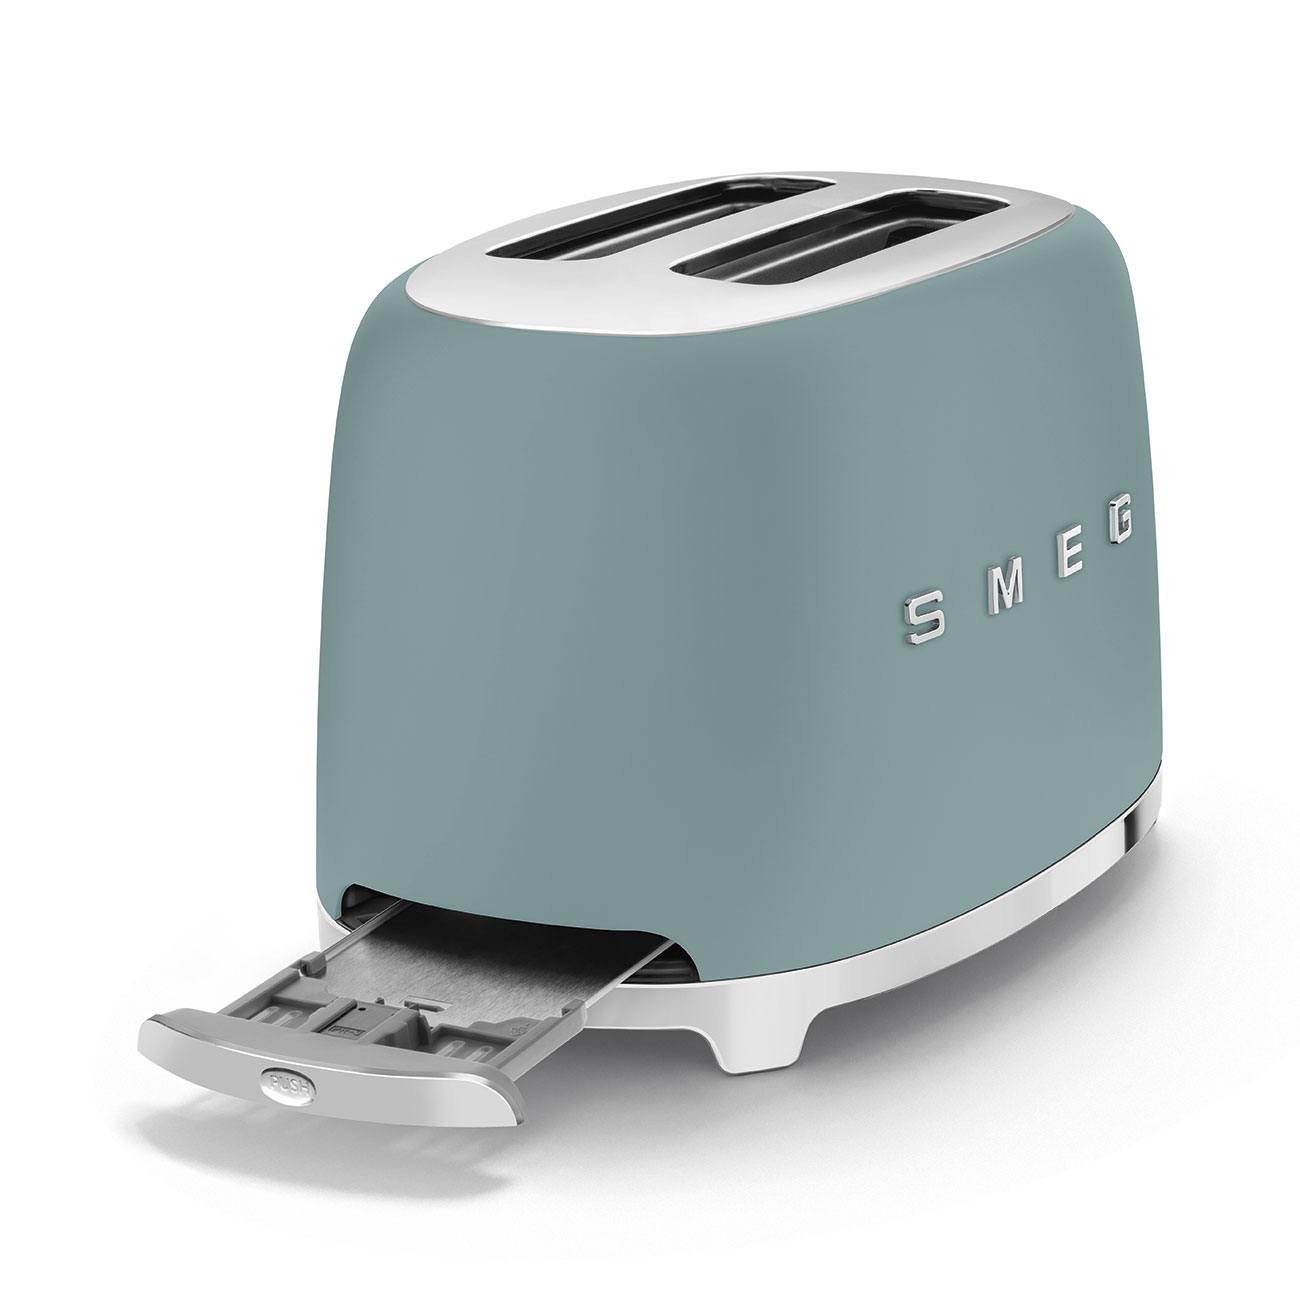 SMEG Toaster TSF01 Emerald Green